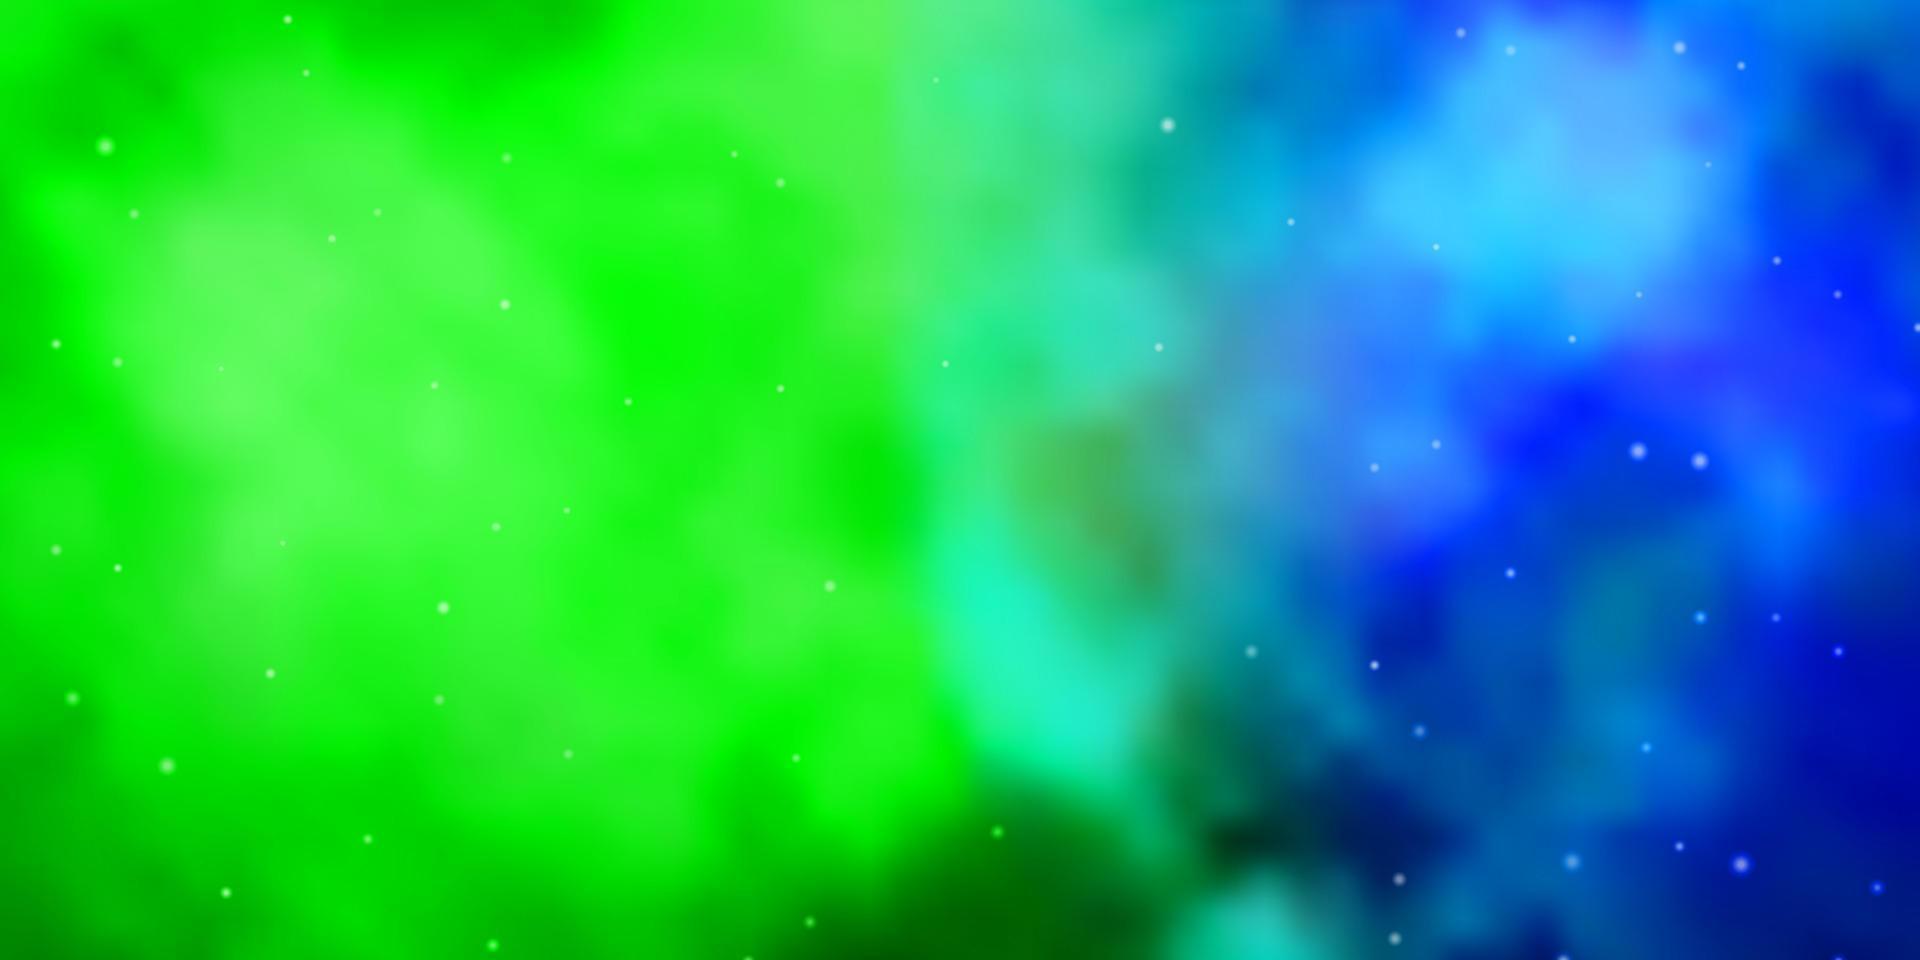 donkere veelkleurige vector sjabloon met neon sterren.